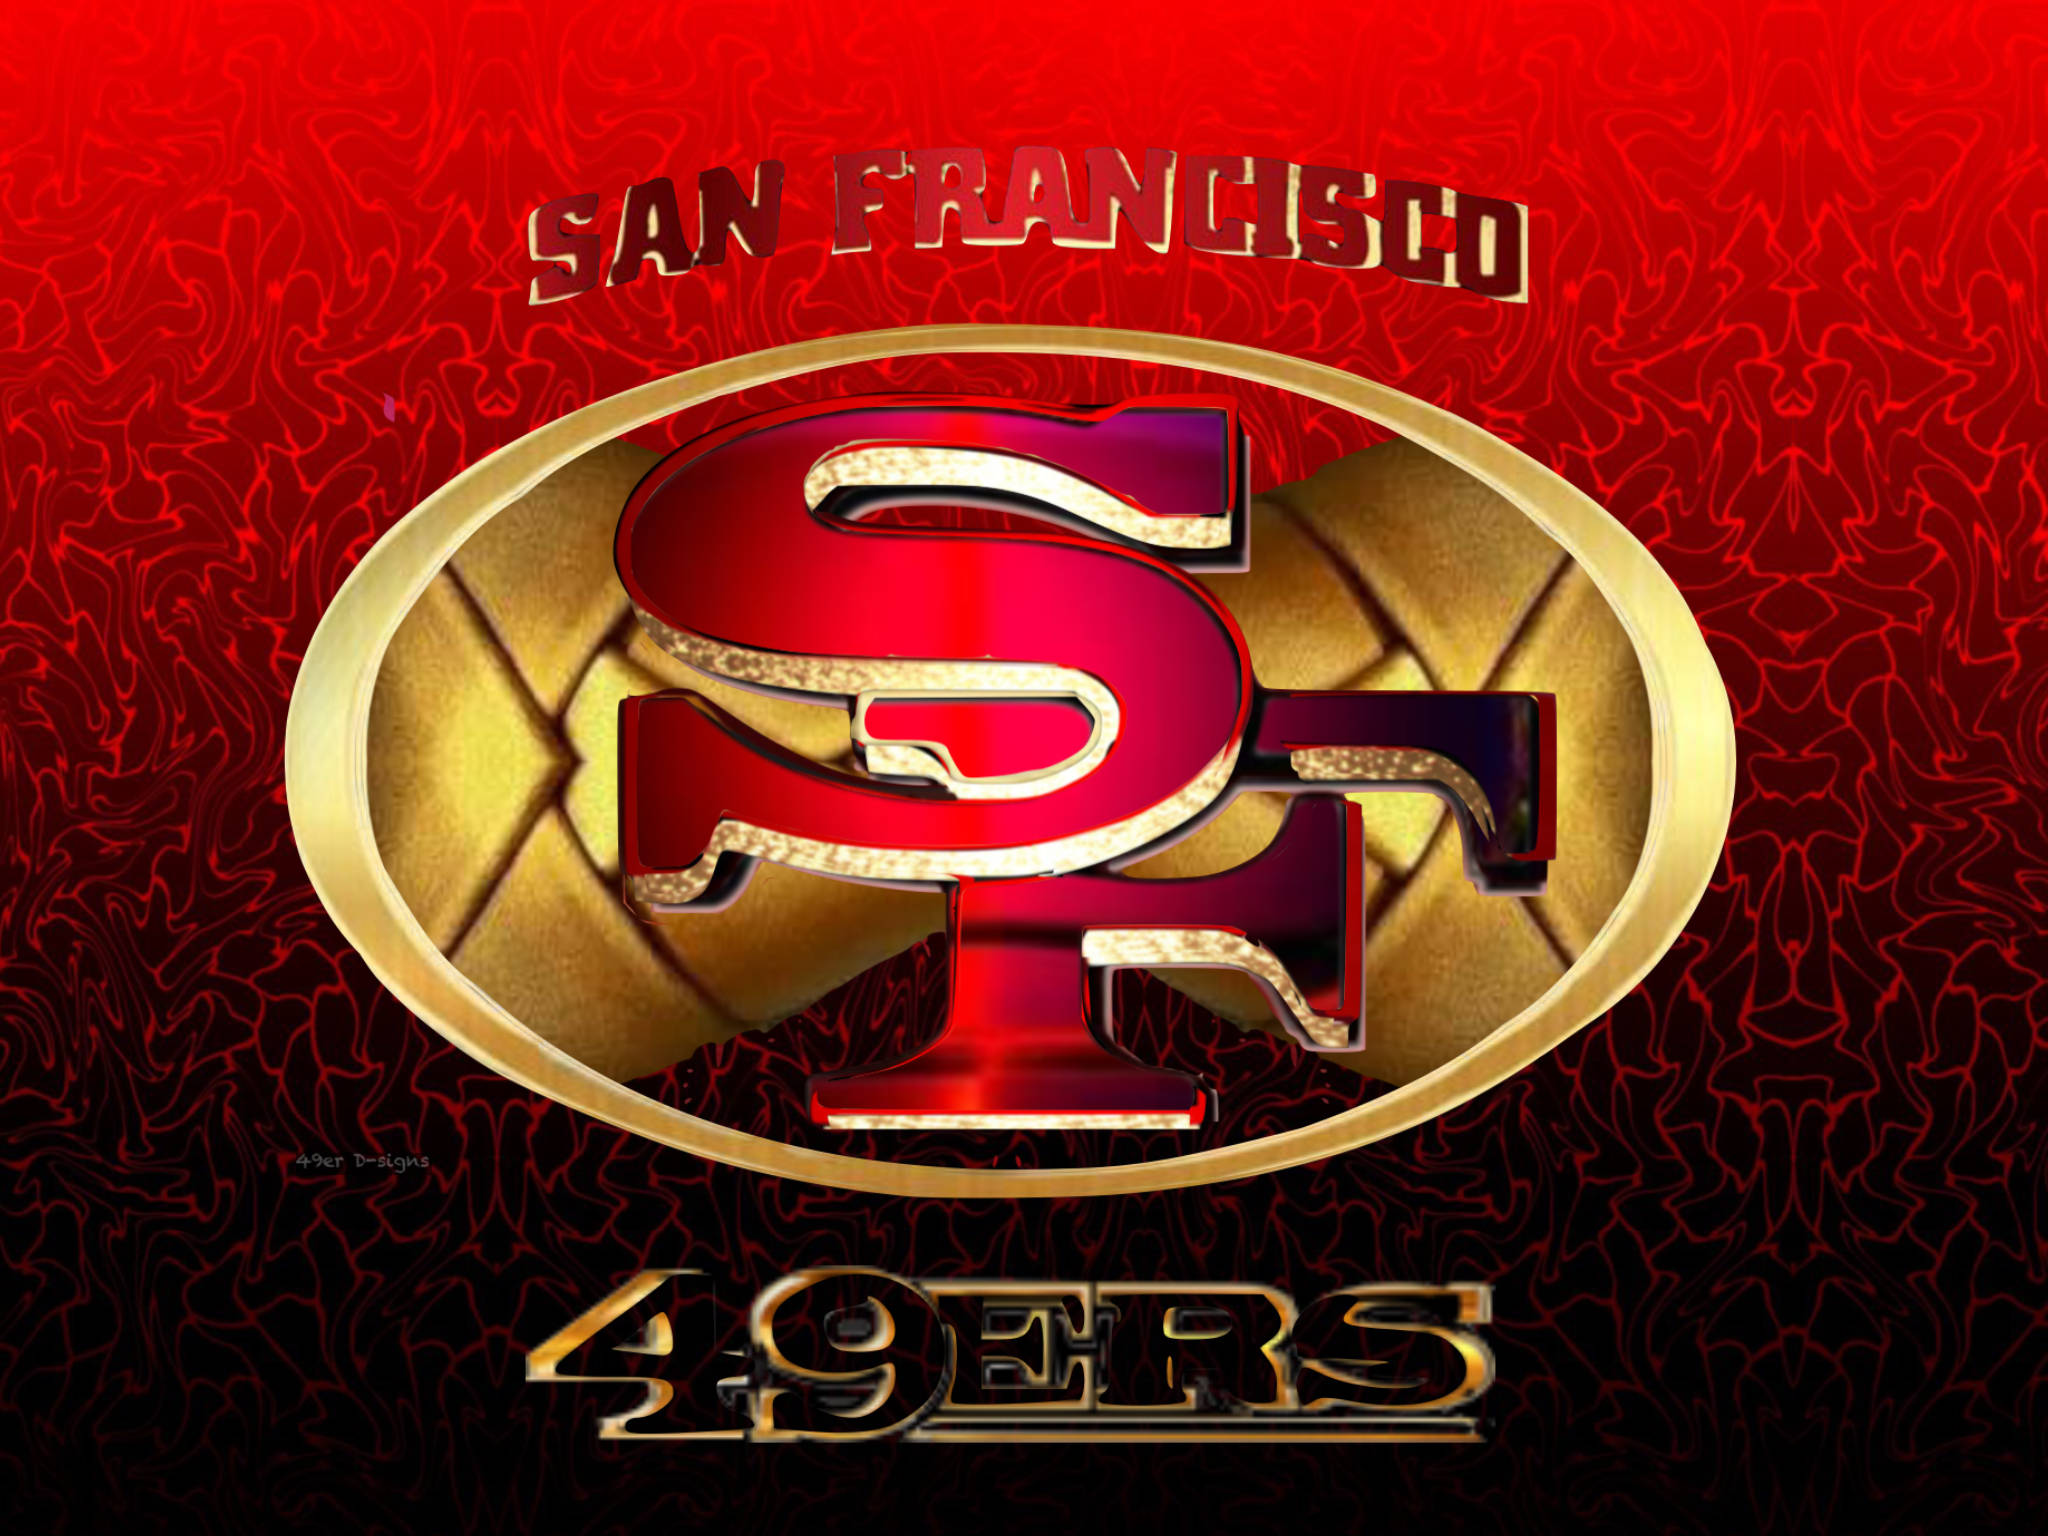 Download San Francisco 49ers Team Wallpaper | Wallpapers.com